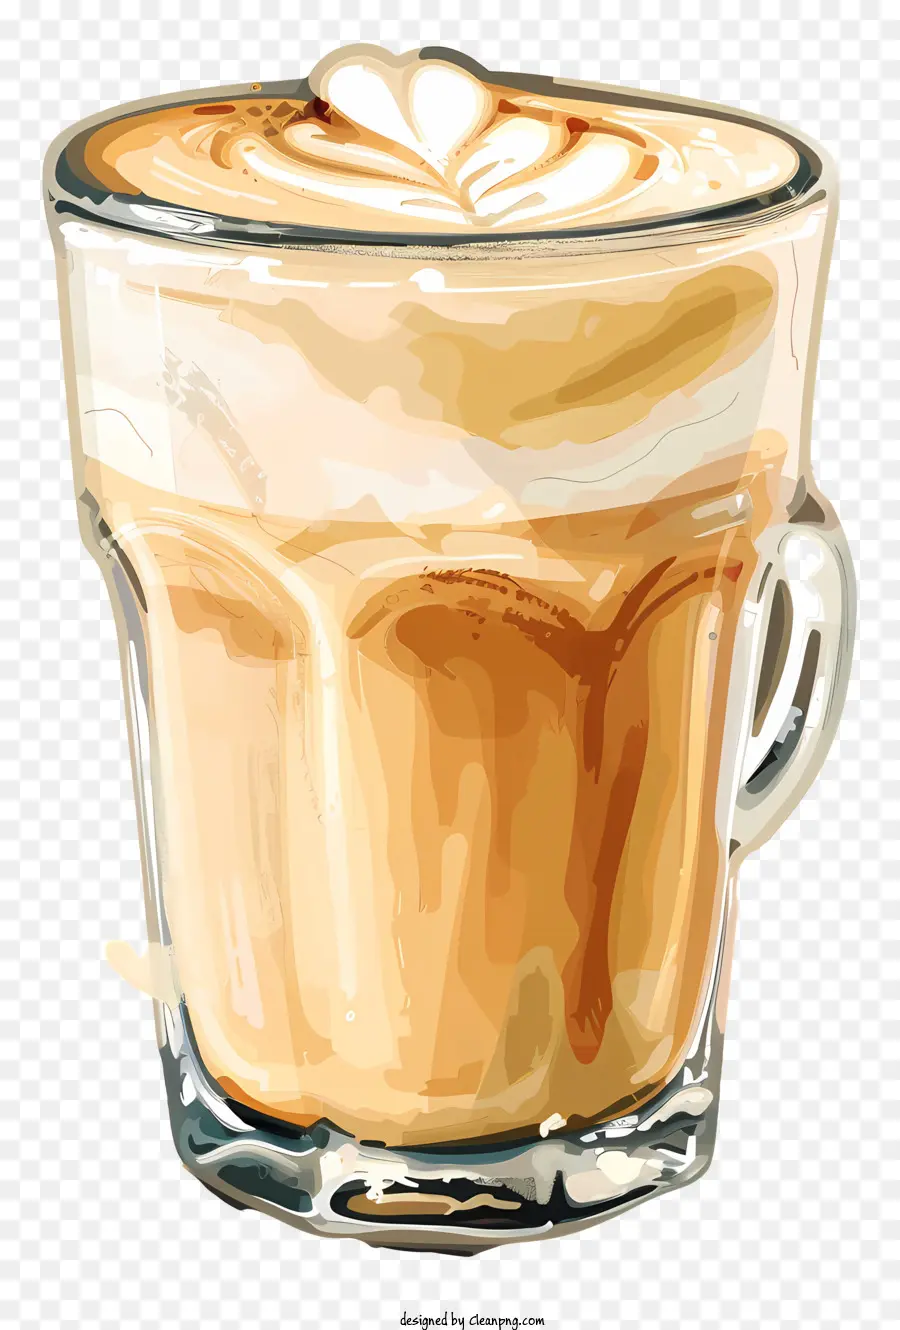 cà phê - Latte bọt trong cốc thủy tinh trên nền trắng